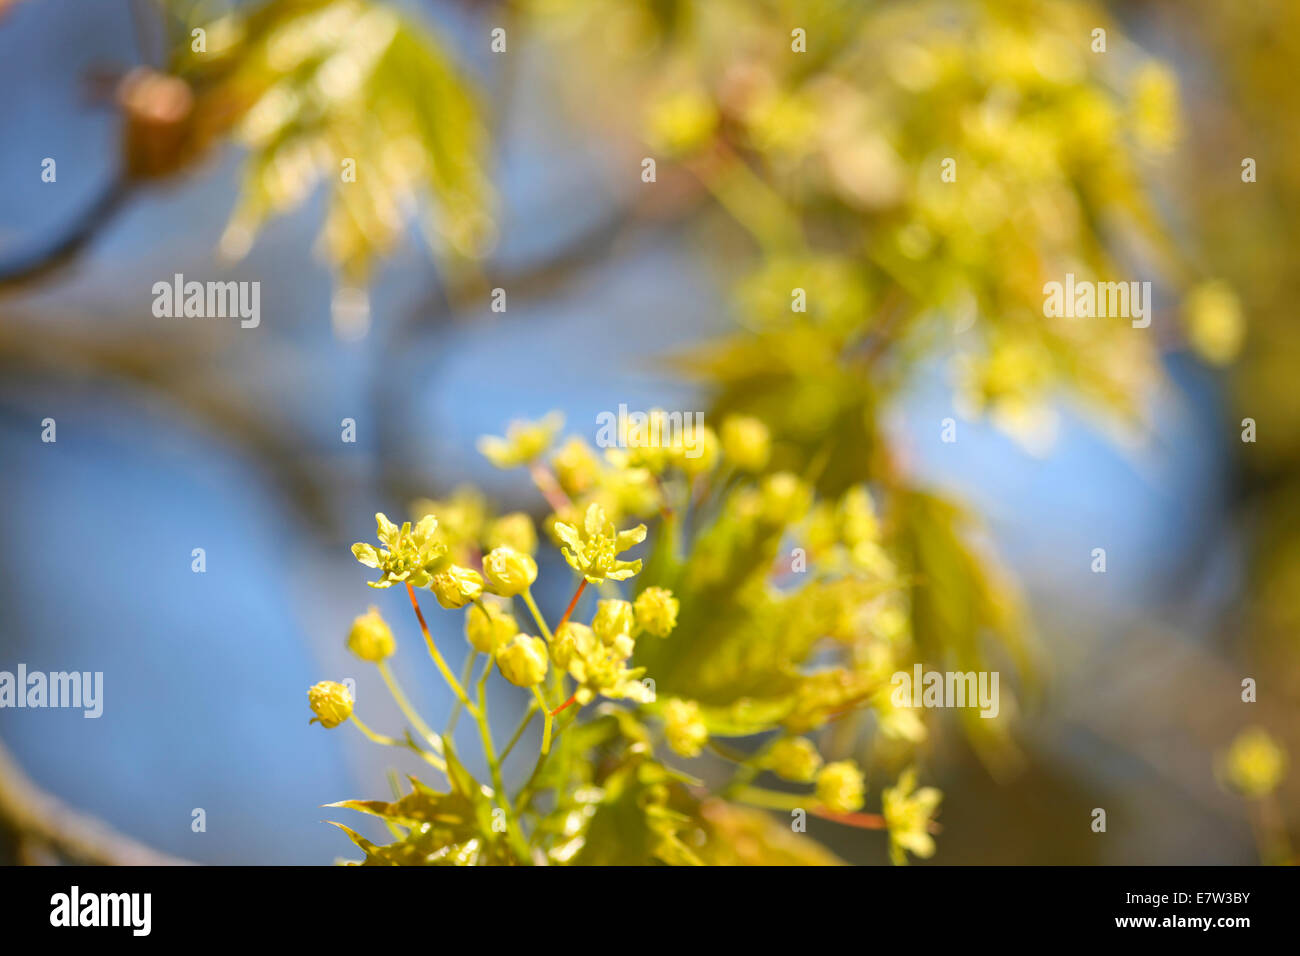 Acer Platanoides im Frühjahr Knospen © Jane Ann Butler Fotografie JABP1295 Stockfoto